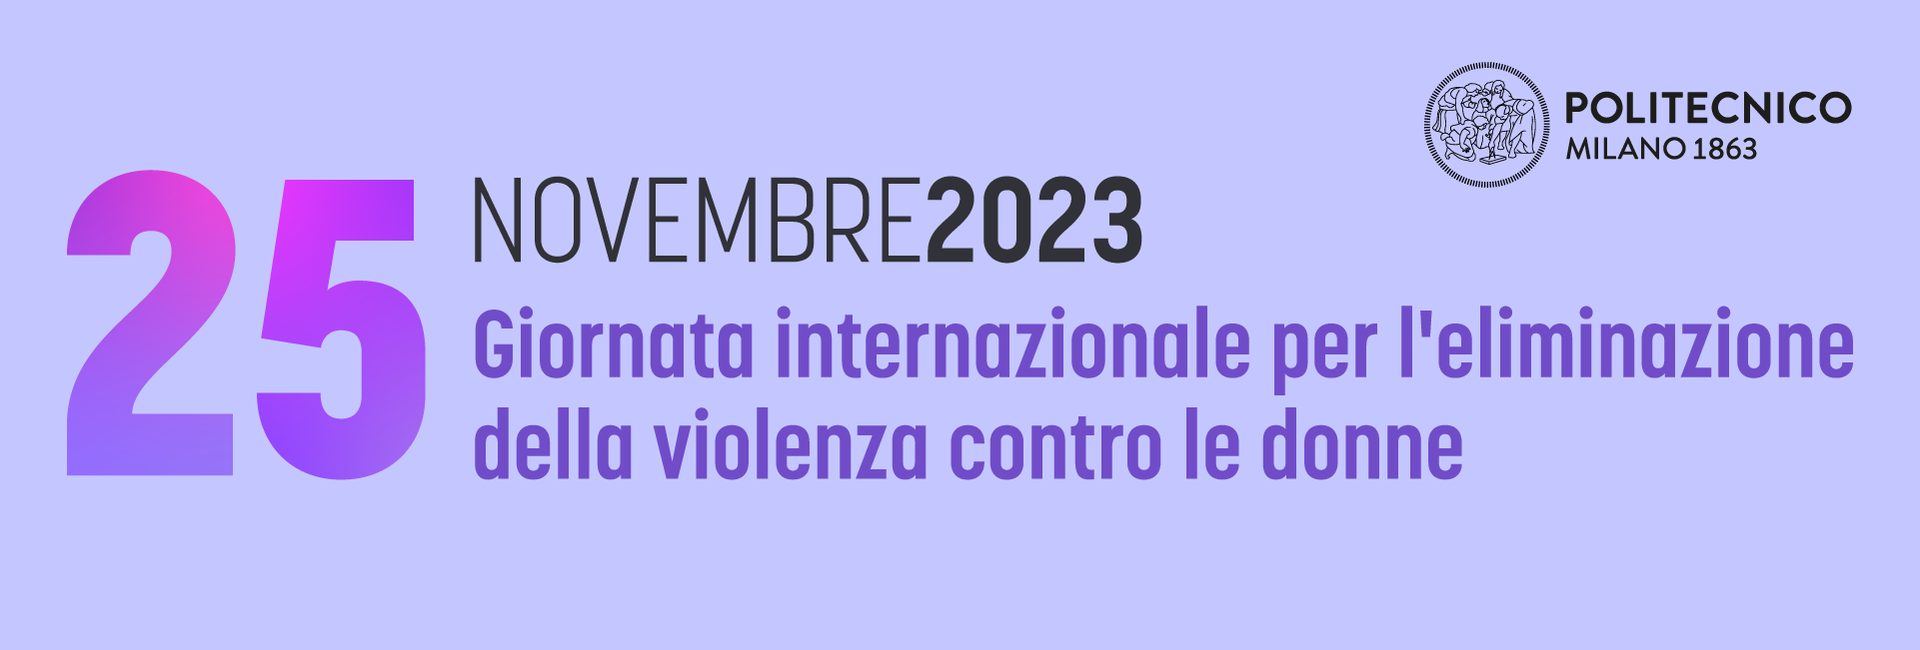 25 novembre 2023 - Giornata internazionale per l'eliminazione della violenza contro le donne